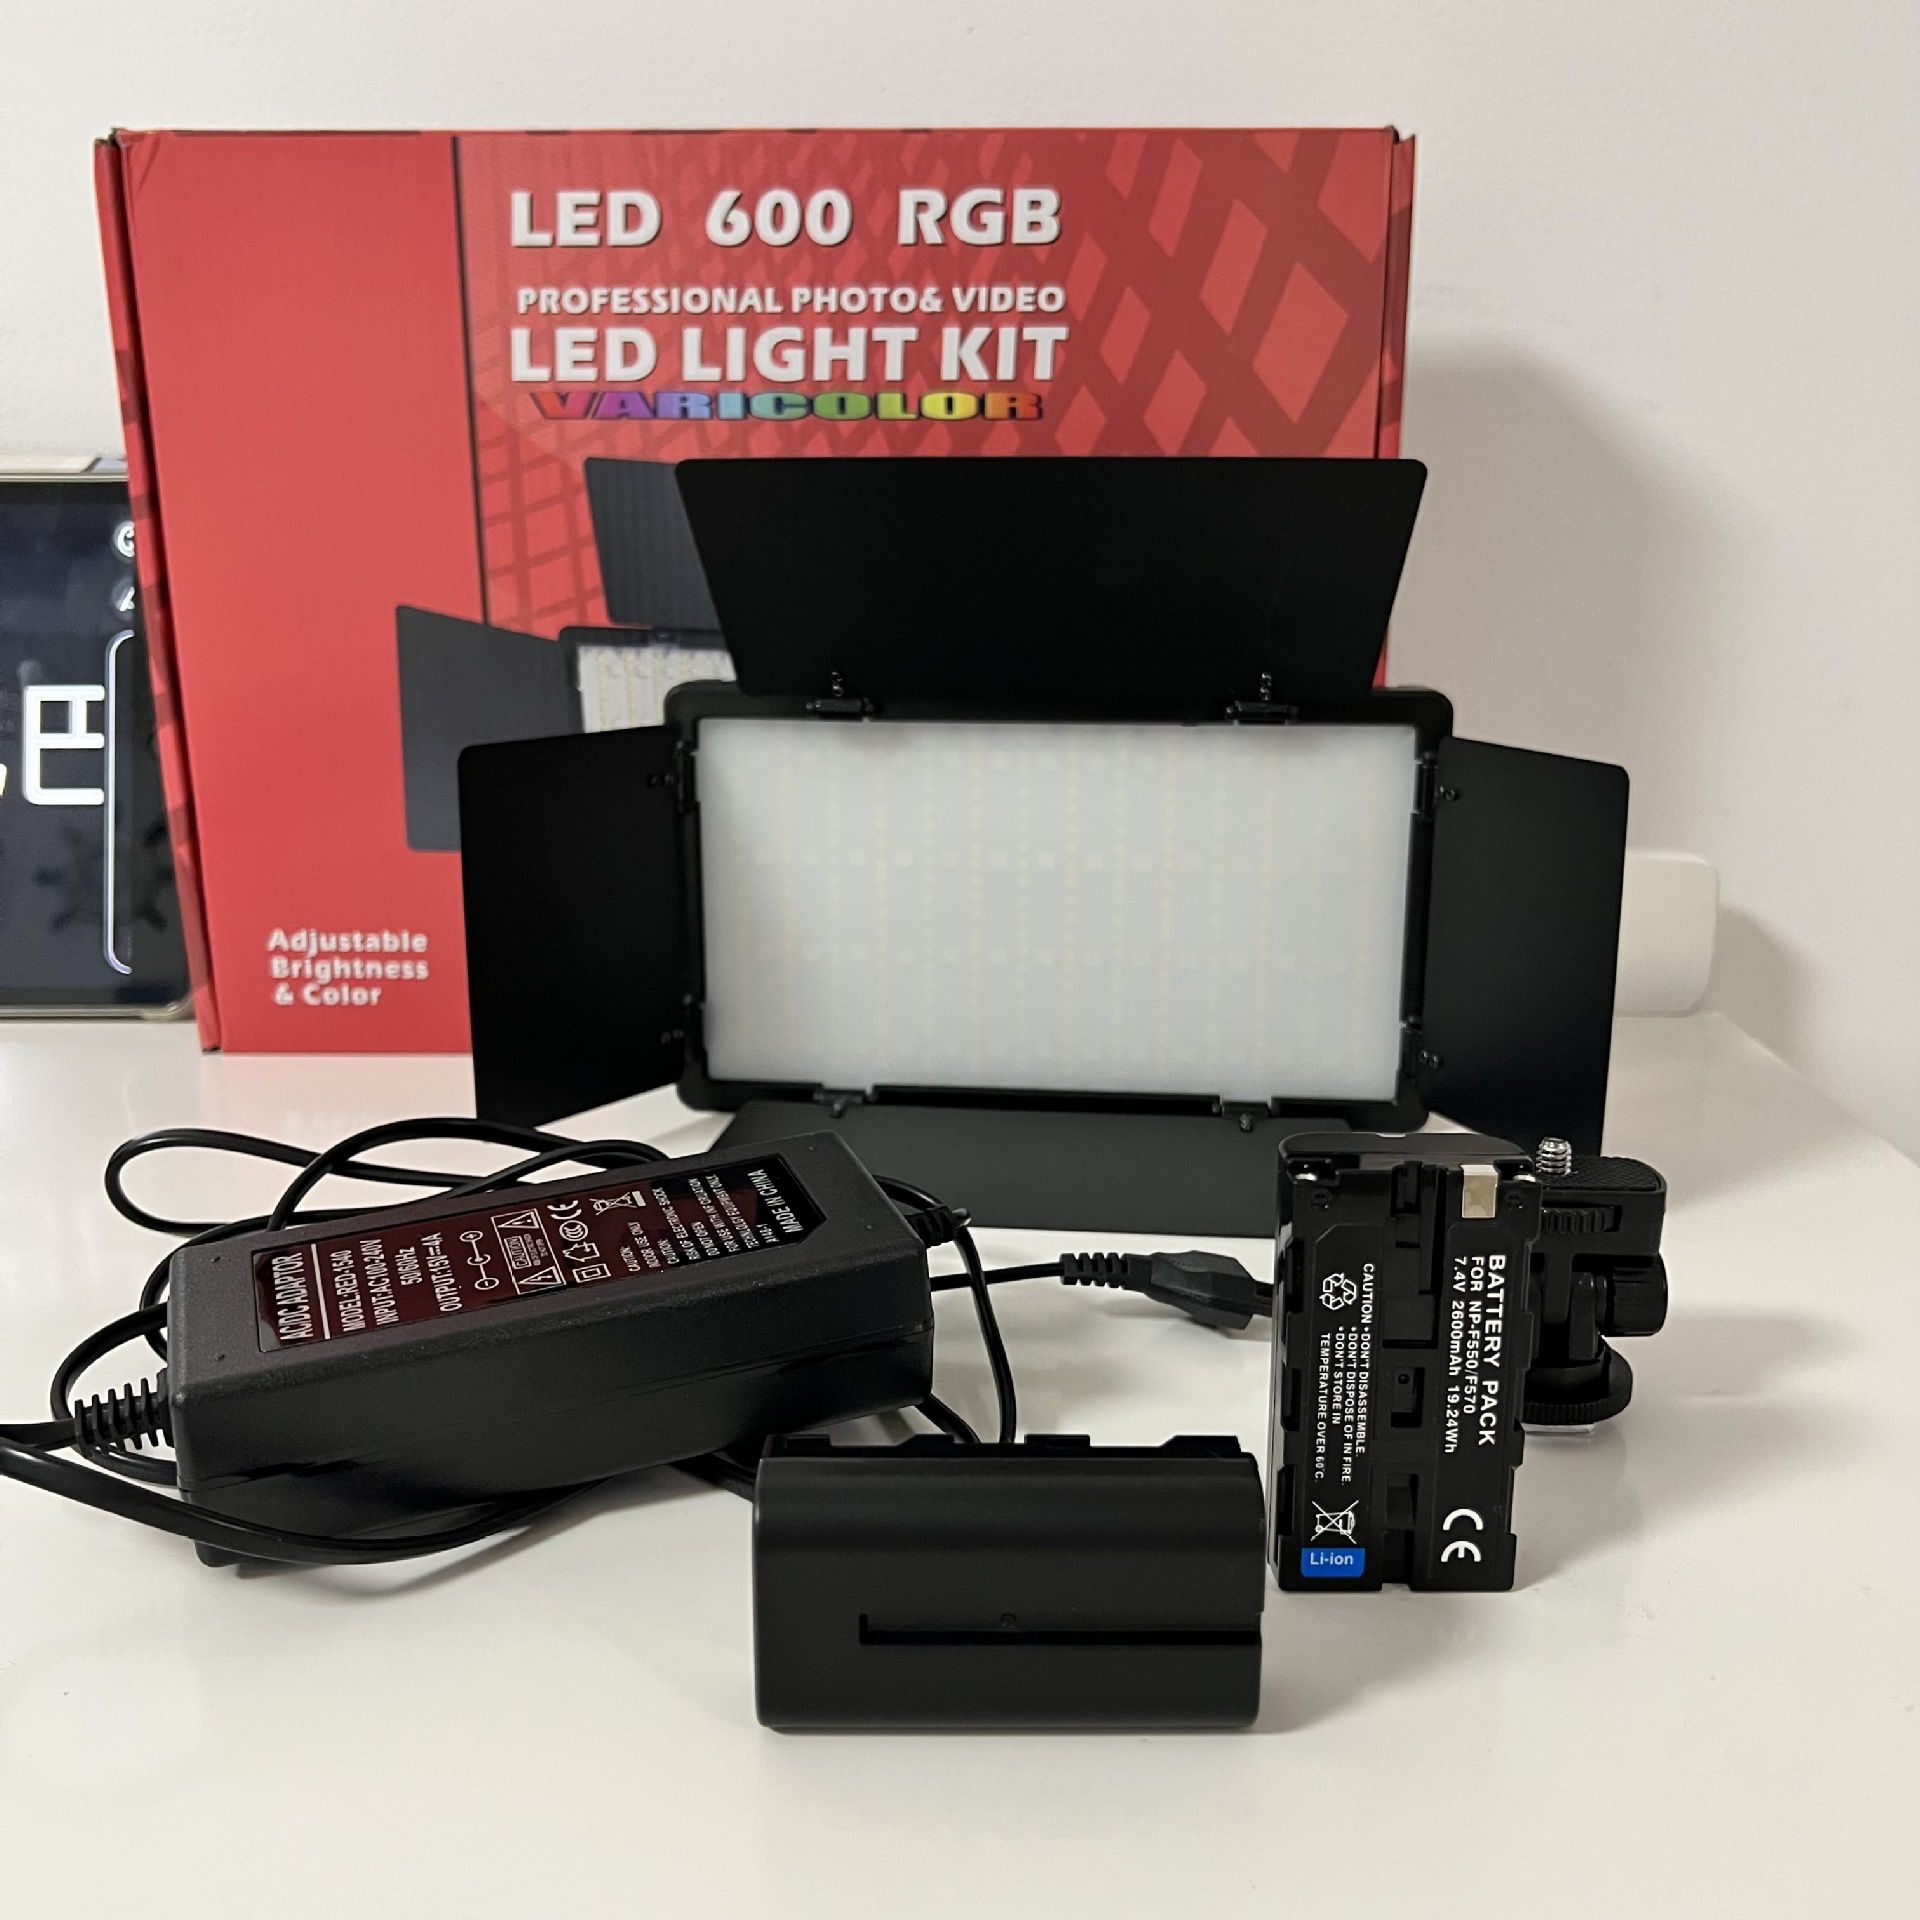 Топ товар | Профессиональное LED освещение : LED-420, LED-600, LED-800